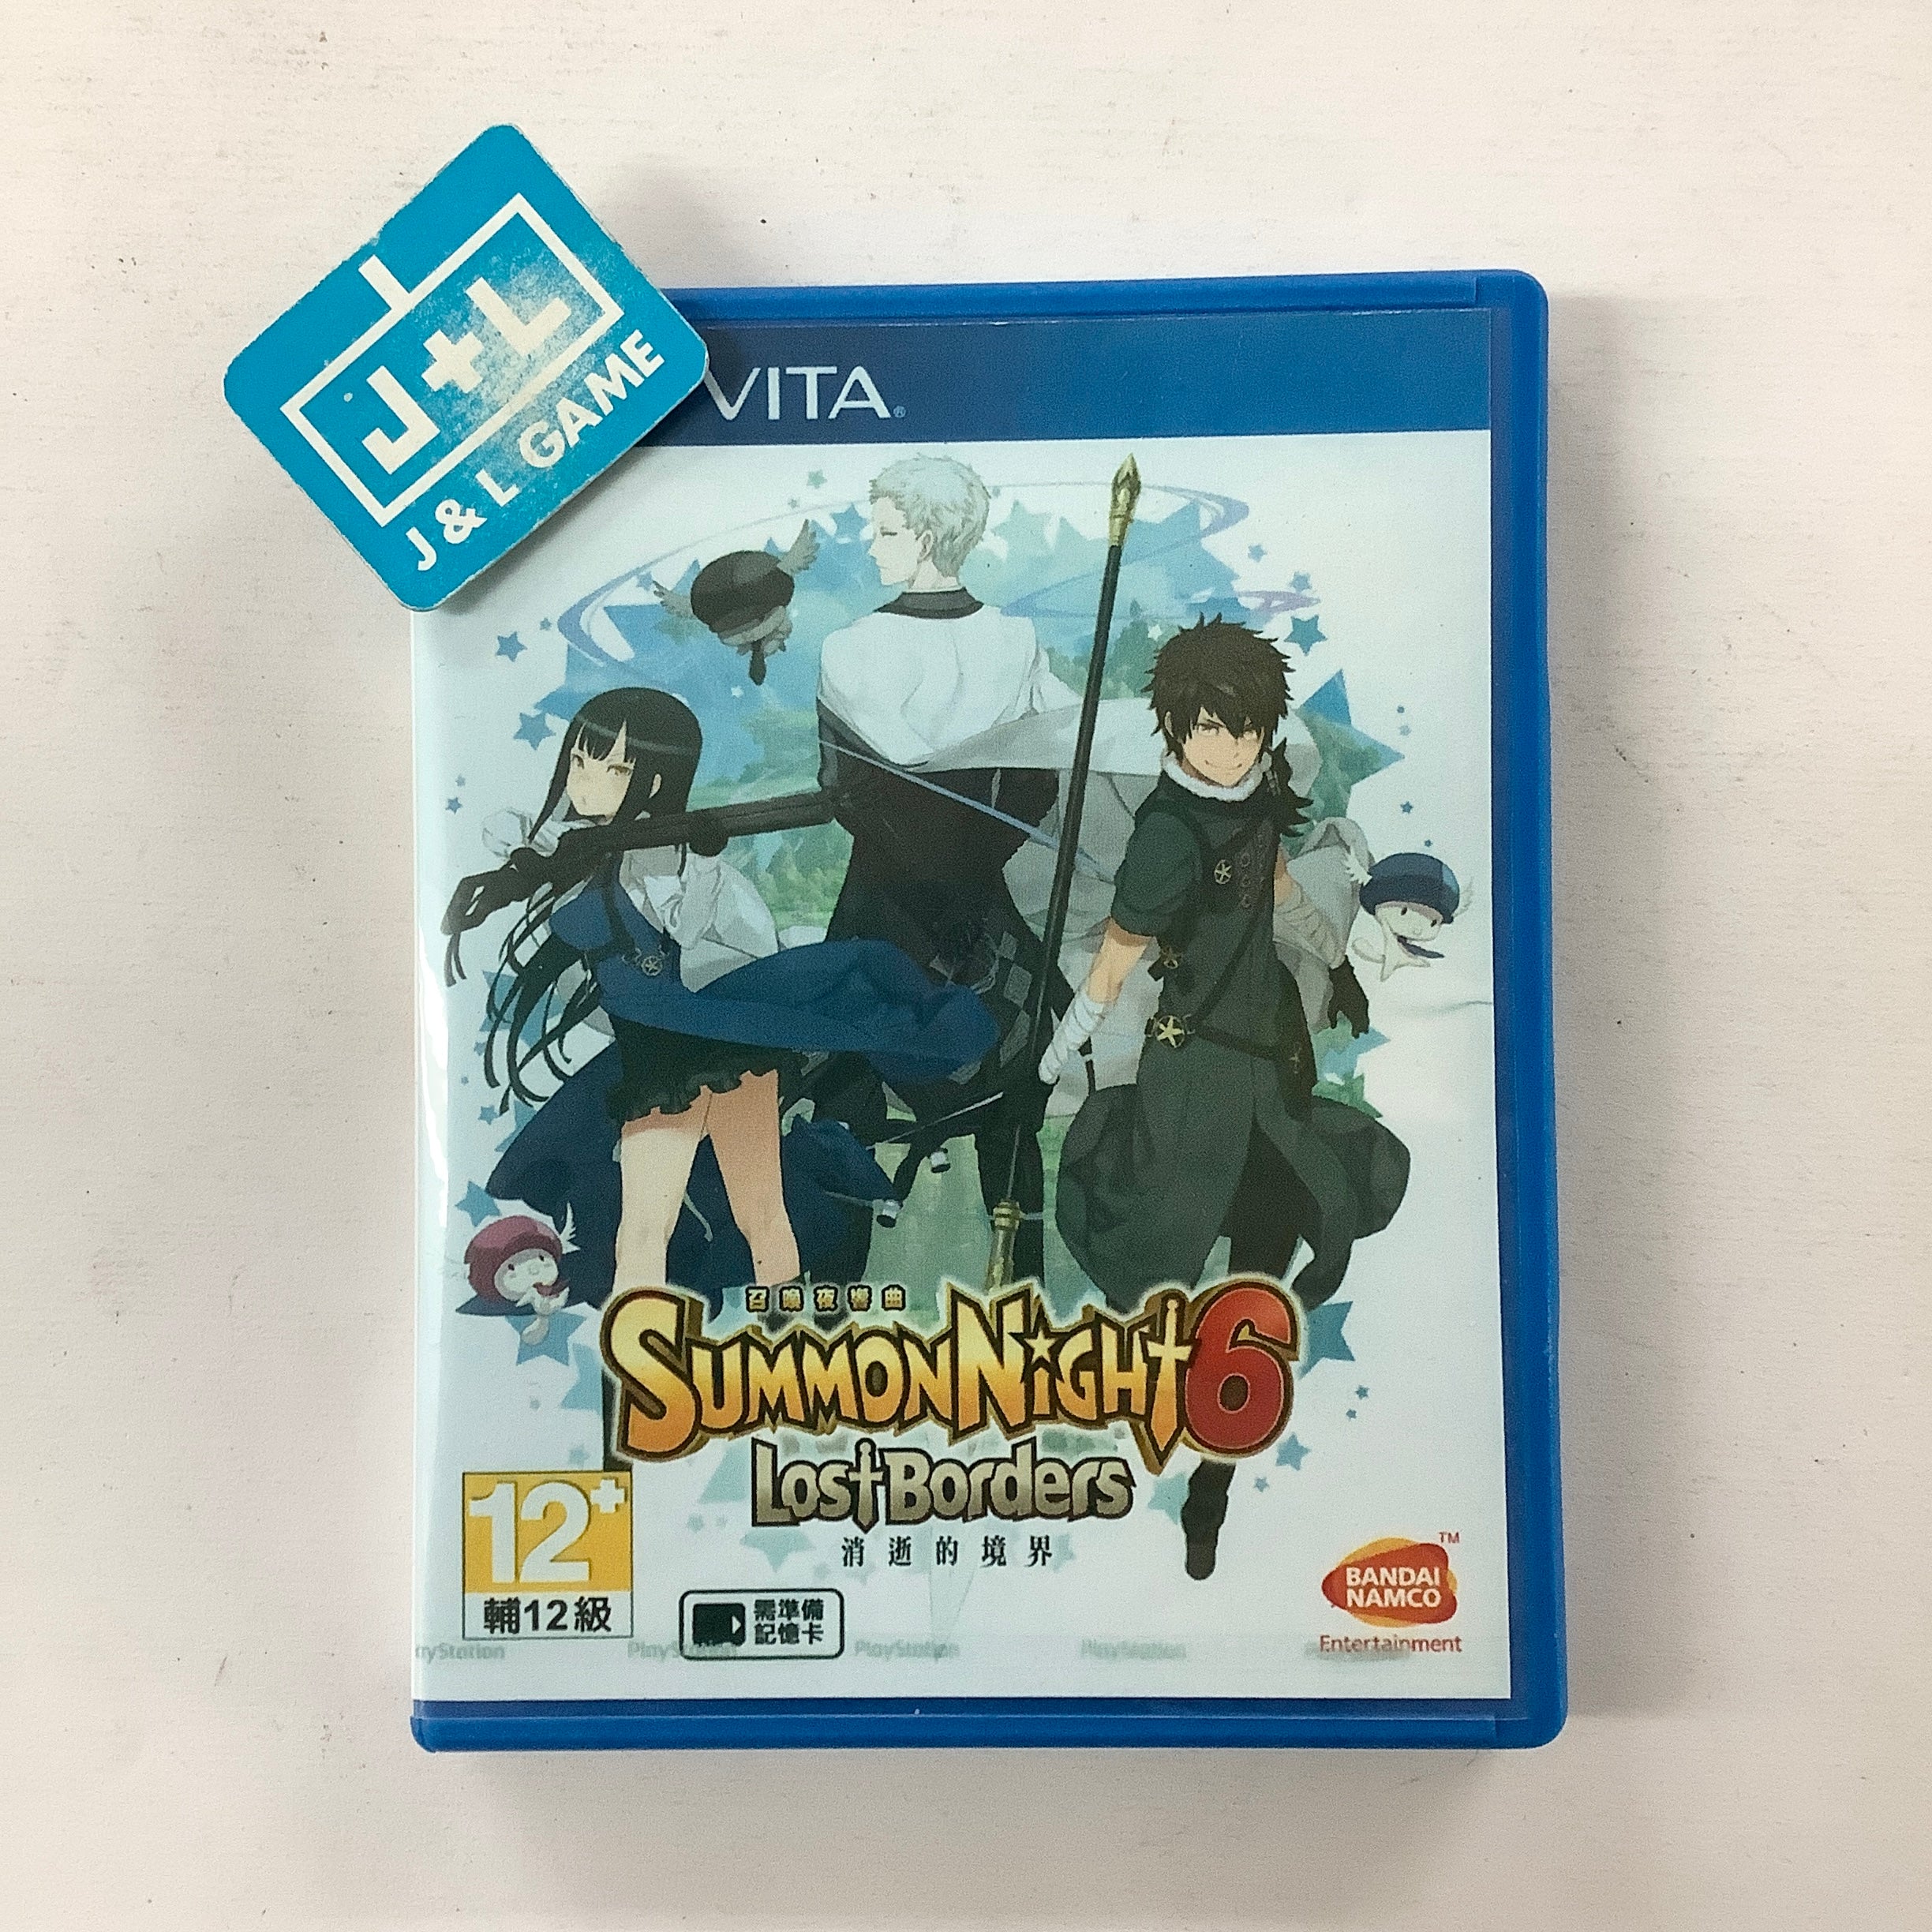 Summon Night 6: Lost Borders - (PSV) PlayStation Vita [Pre-Owned] (Japanese Import) Video Games Gaijinworks   